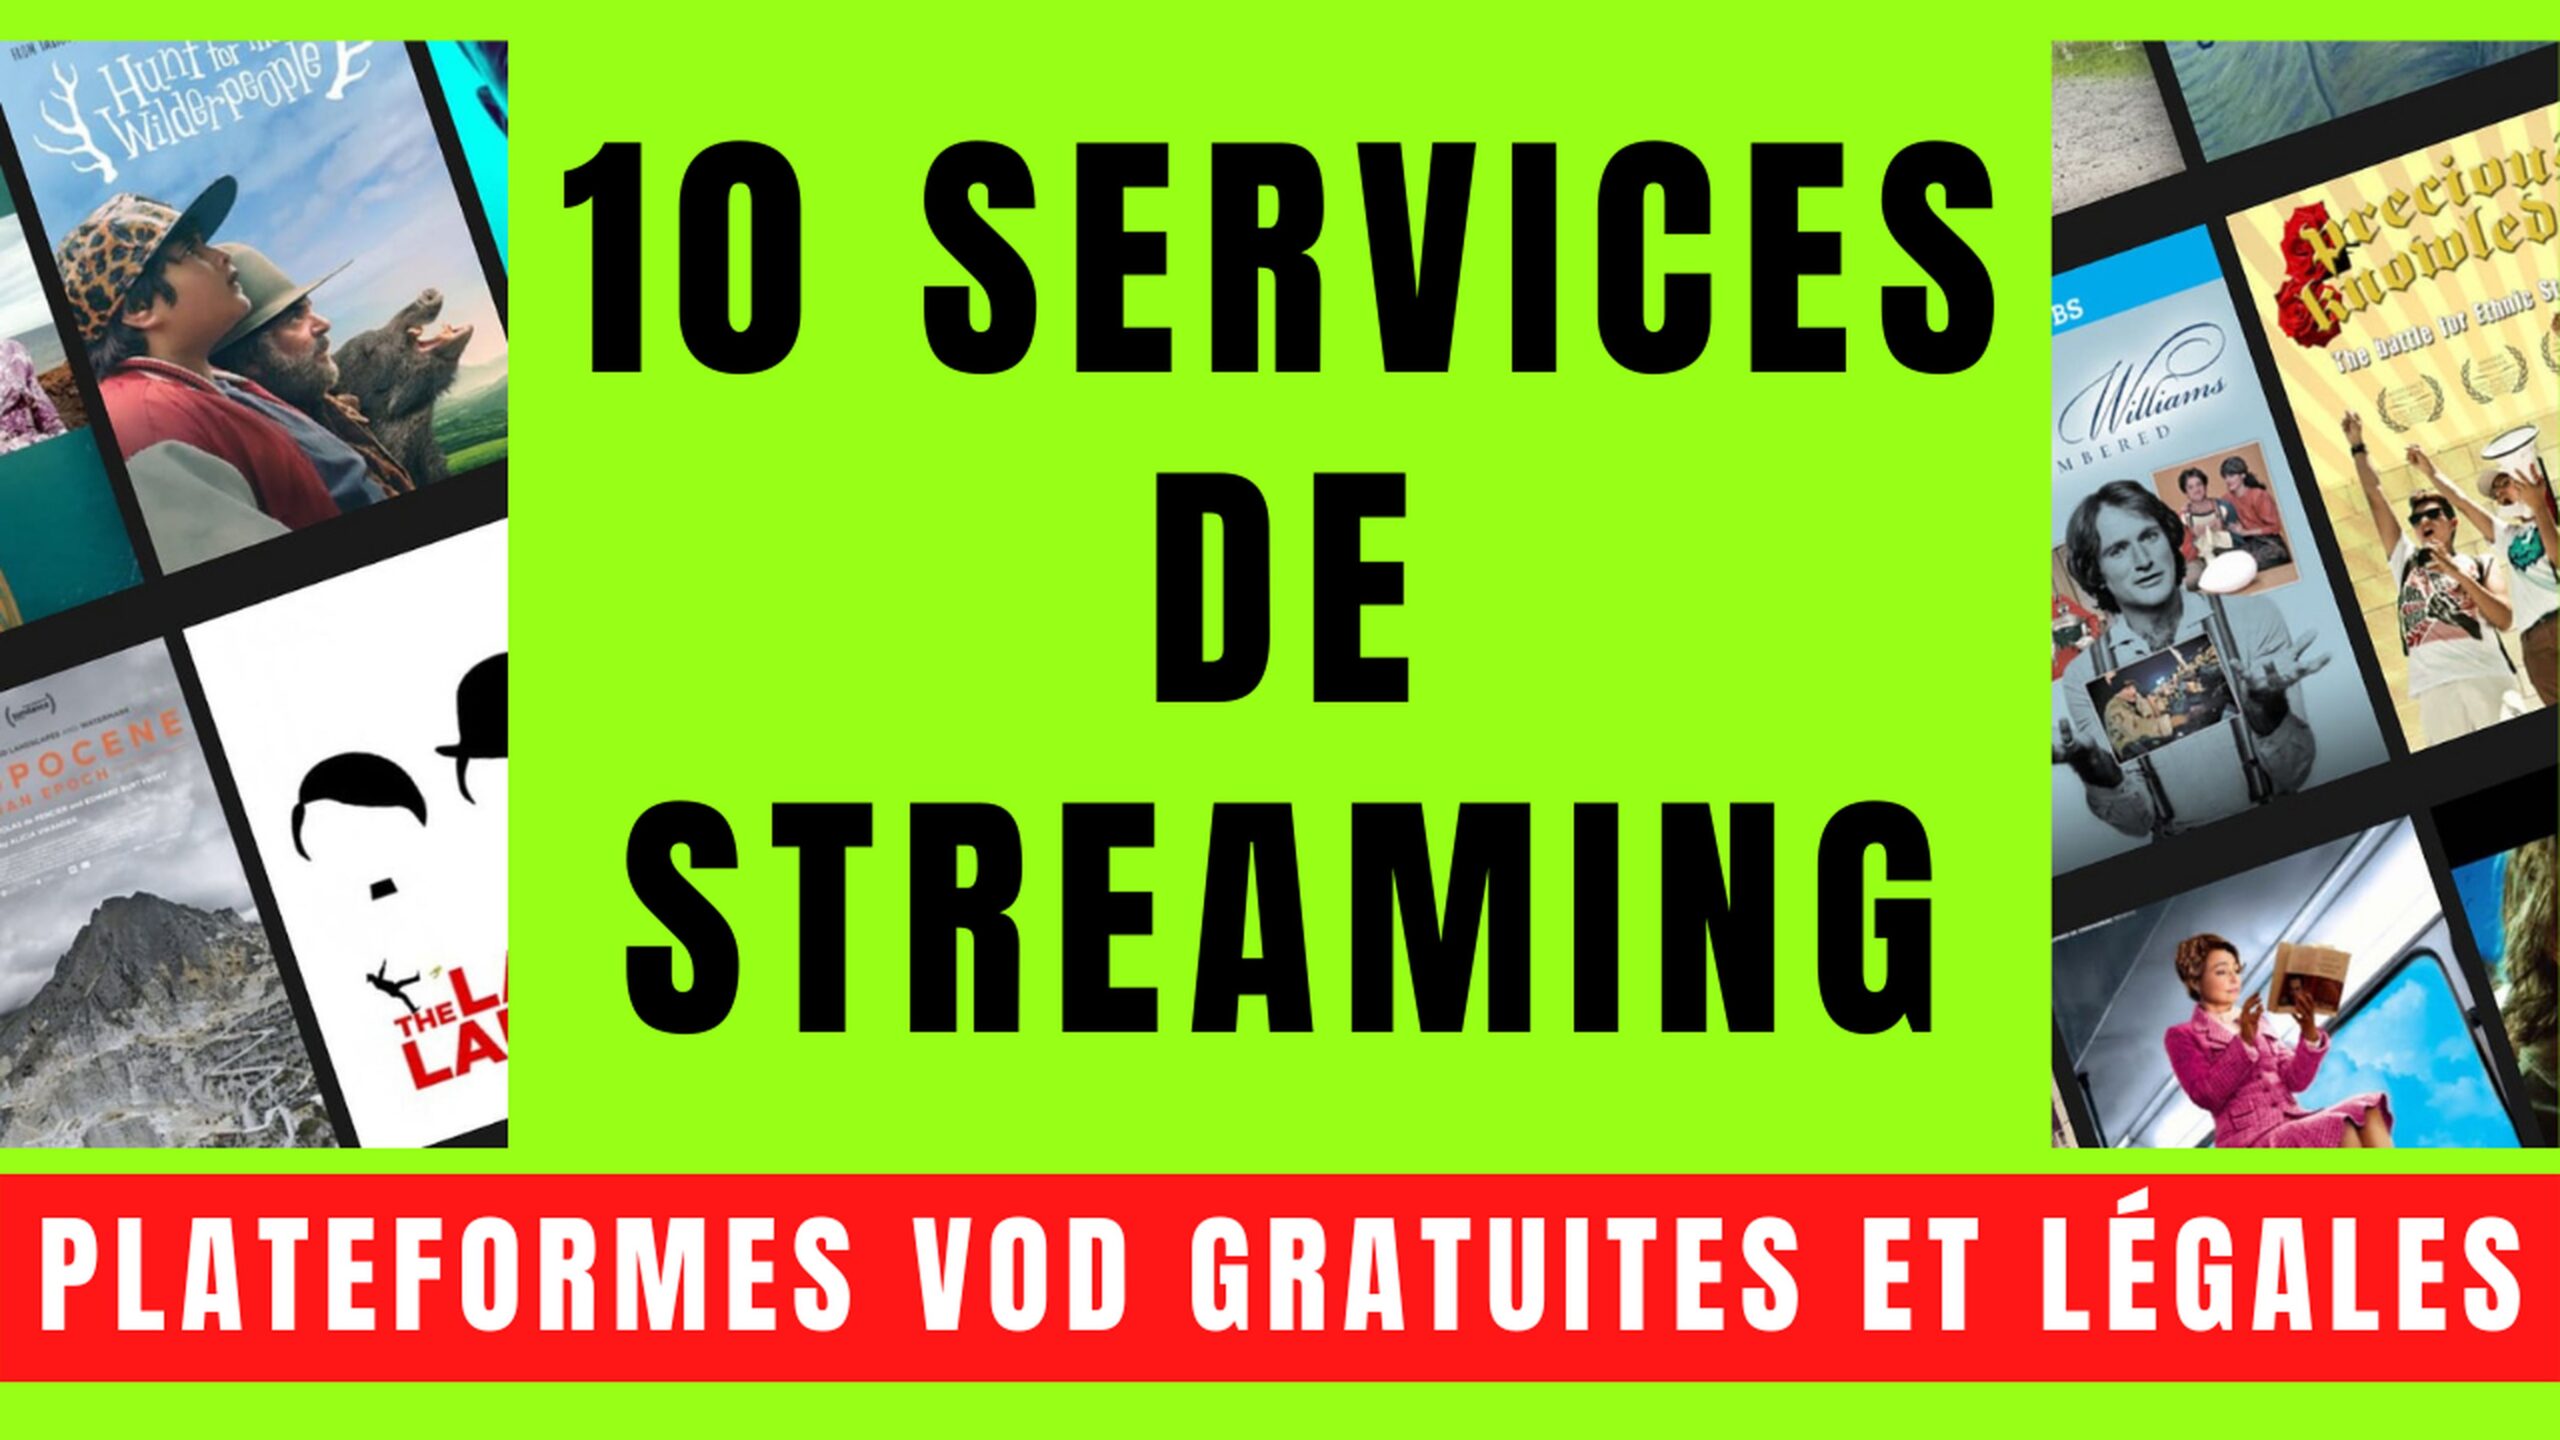 10 SERVICES VOD avec STREAMING GRATUIT et LÉGAL 5